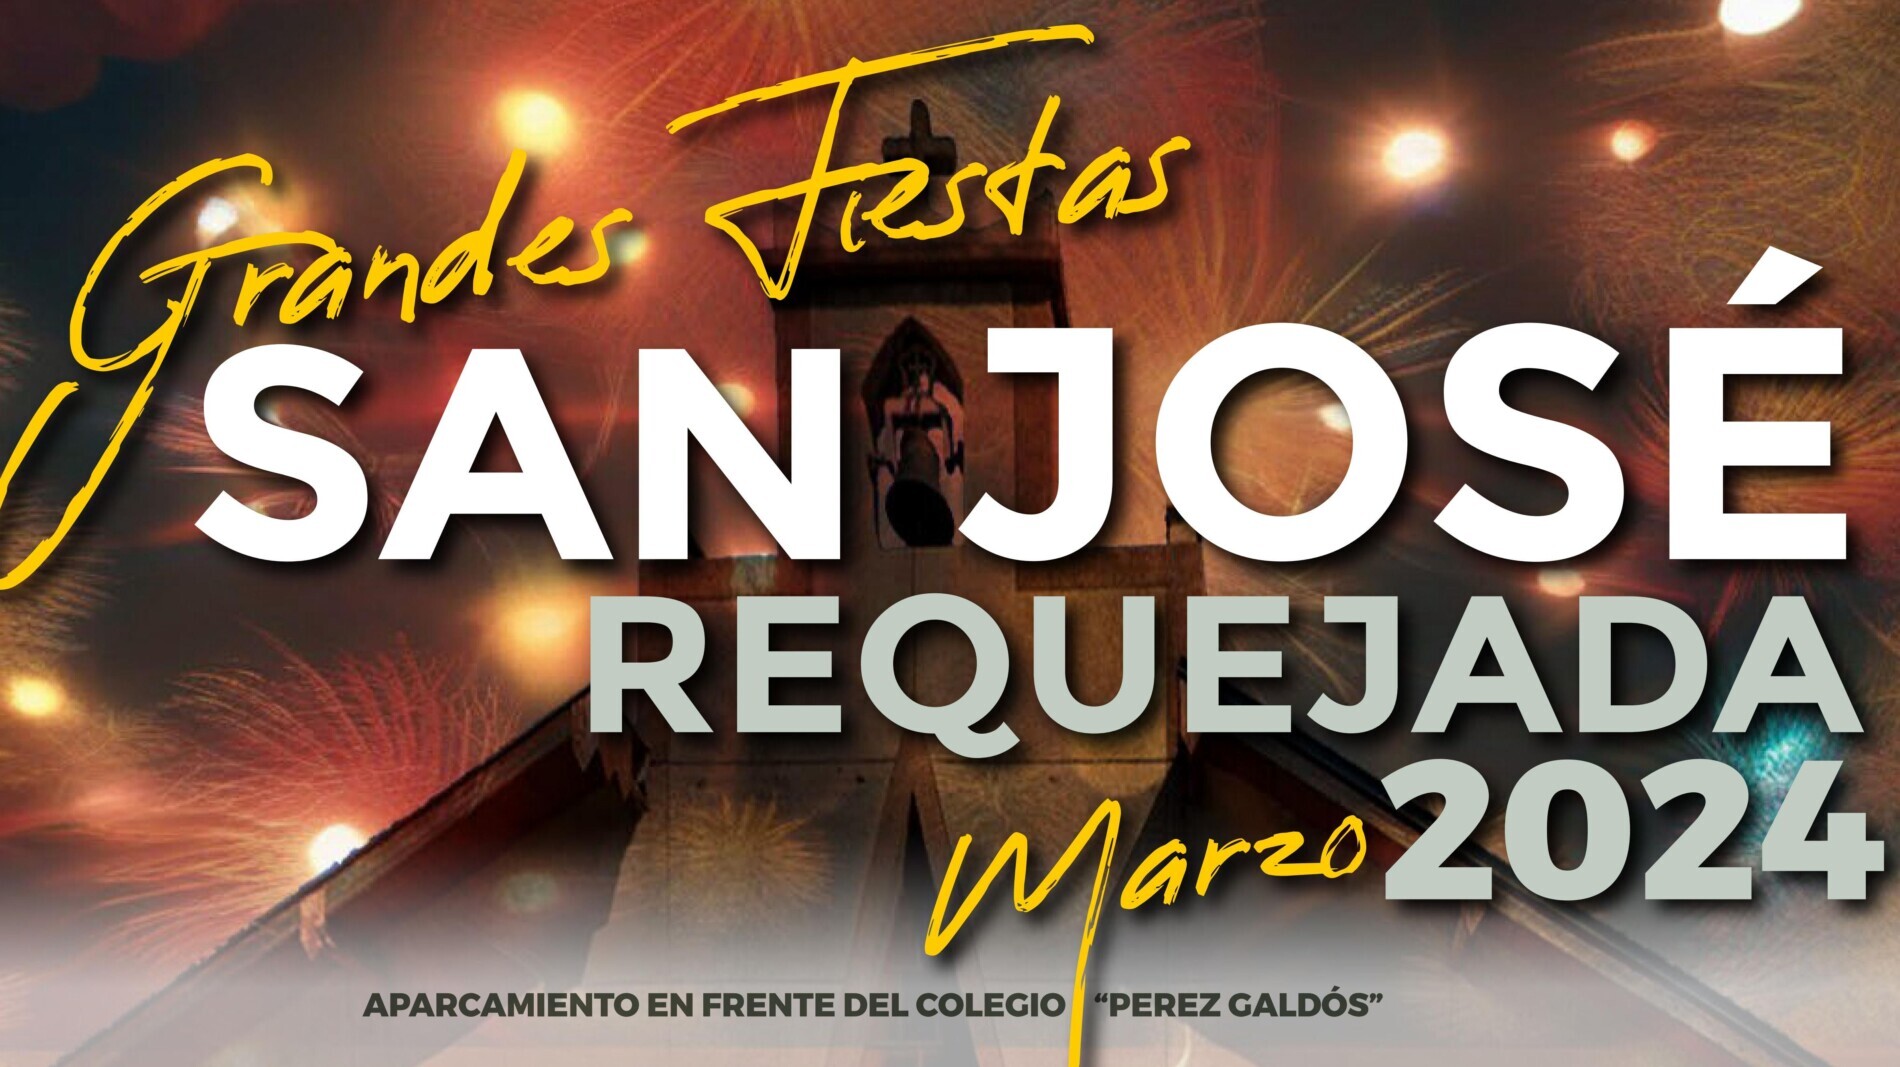 Requejada celebra San José del 15 al 17 de MArzo con un amplio programa de actividades para toda la familia